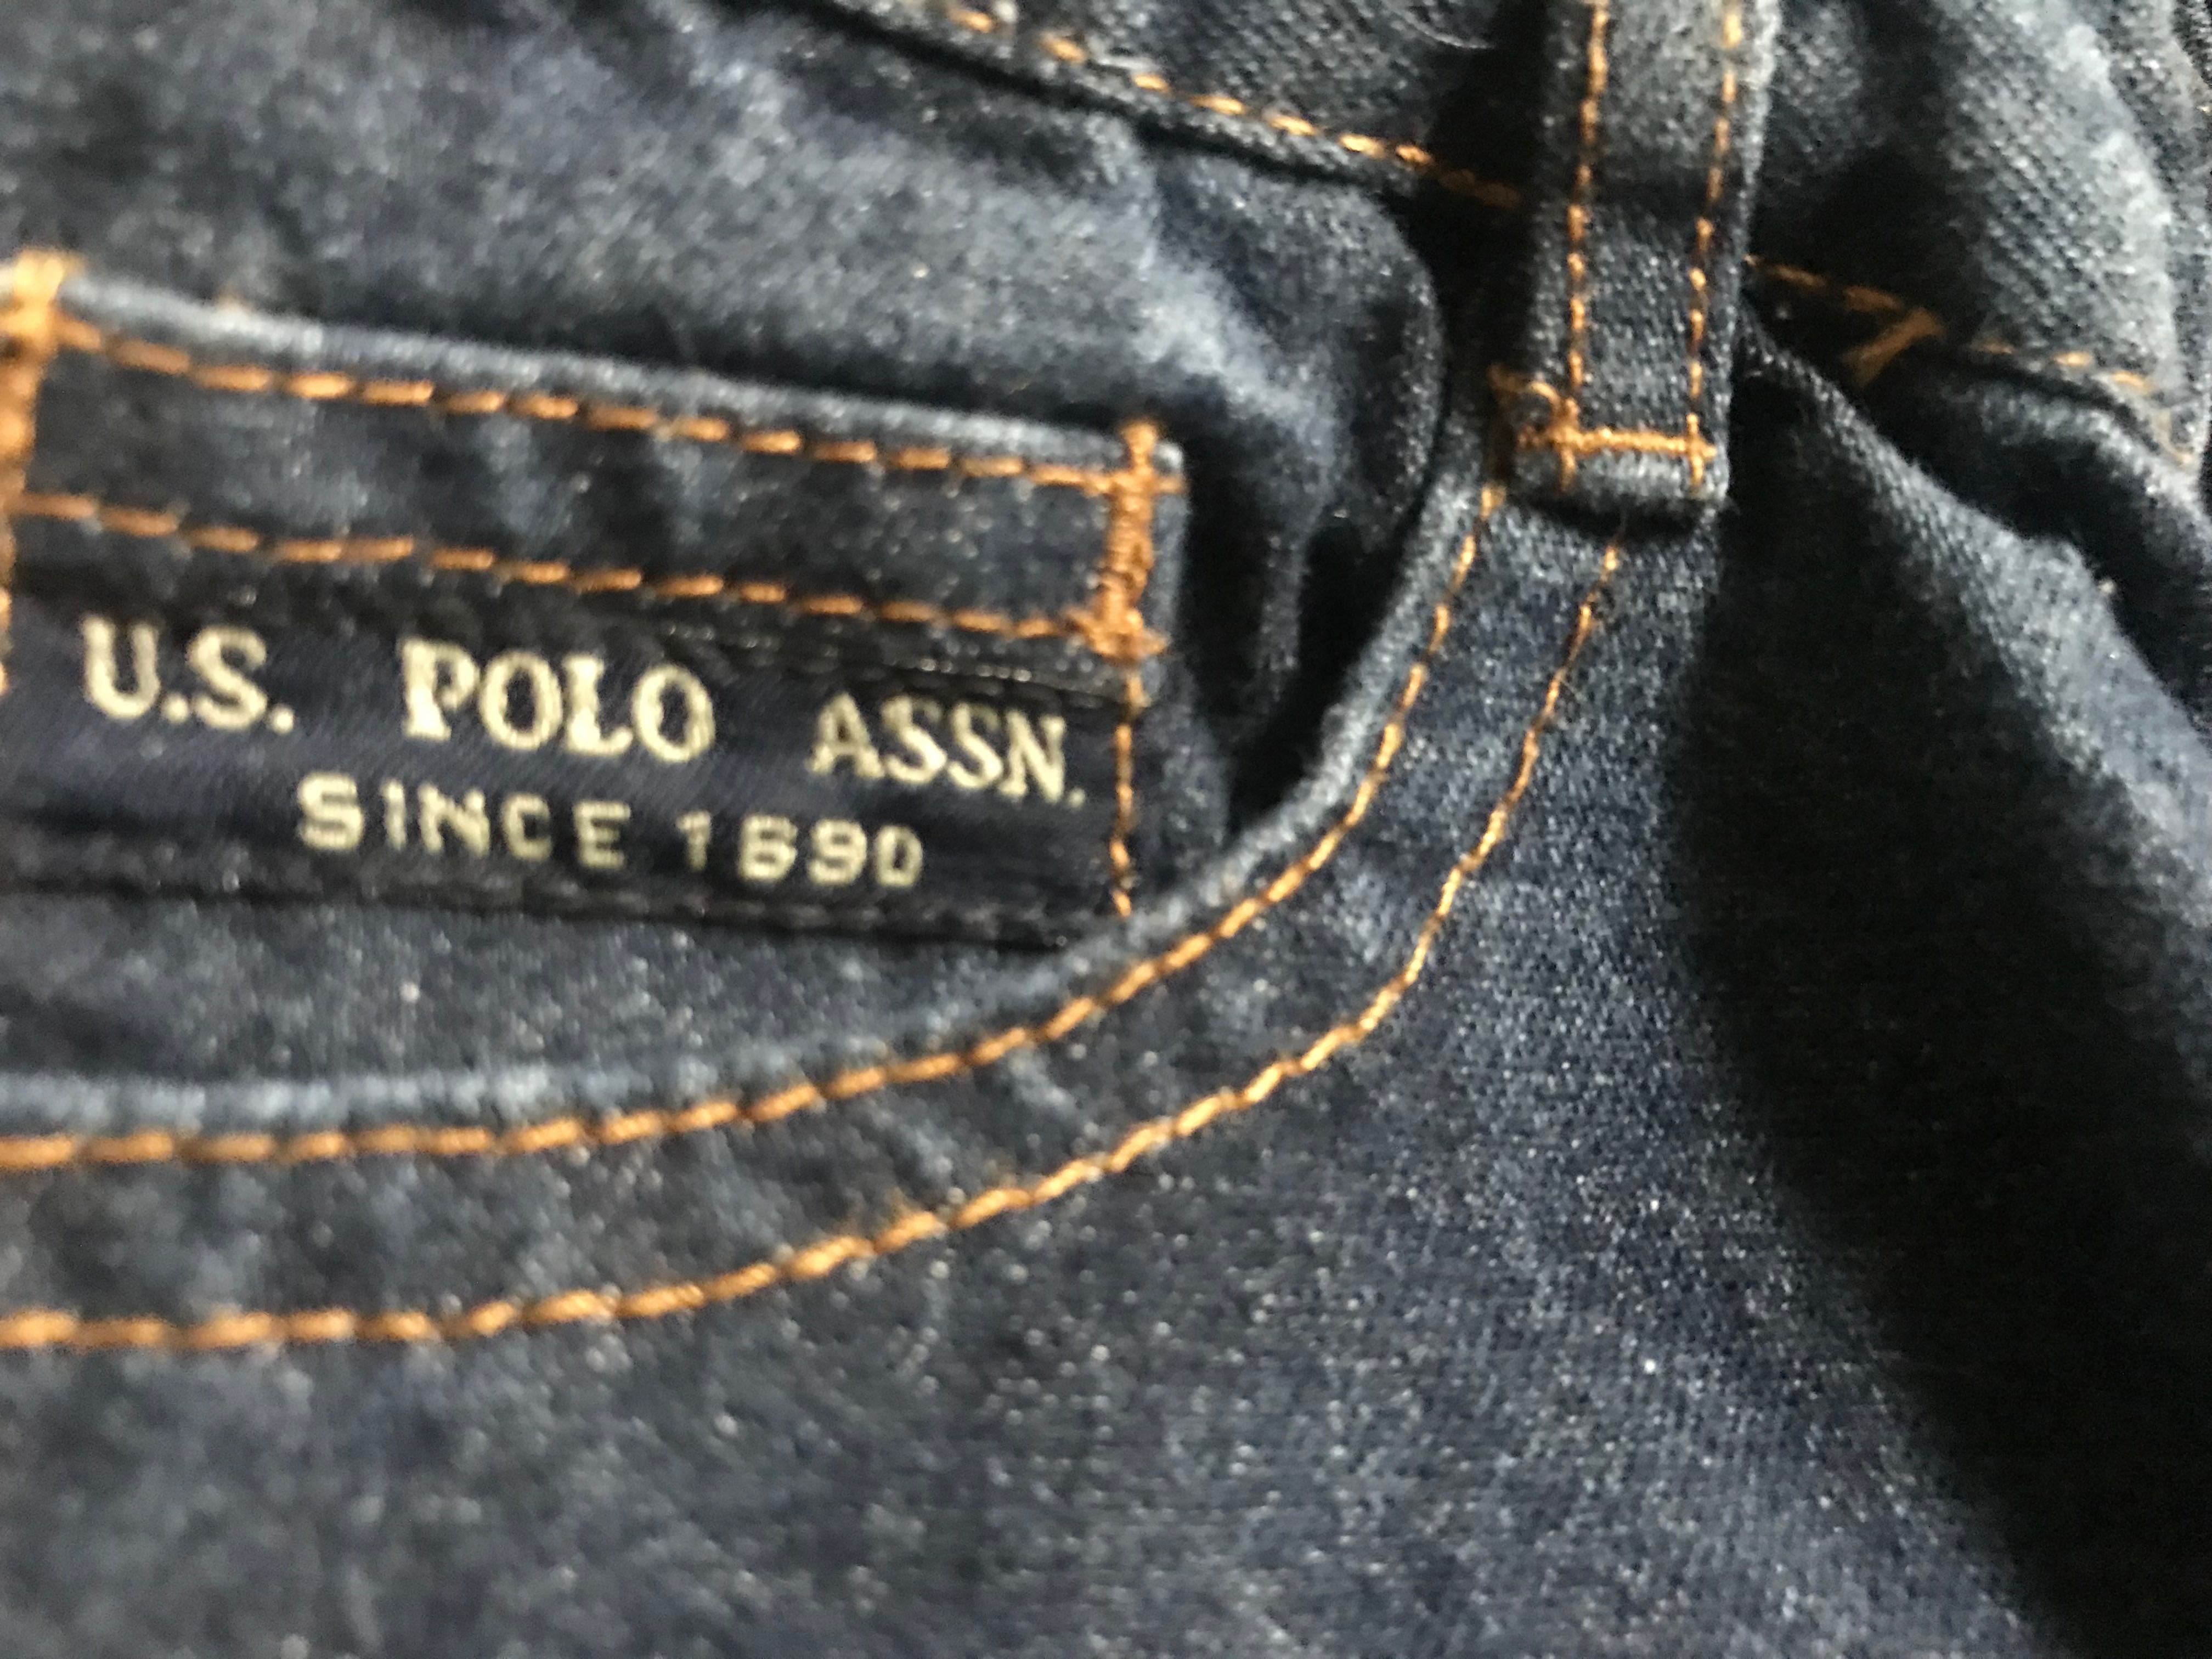 Дитячі джинси U.S.Polo ASSN розмір 2Т